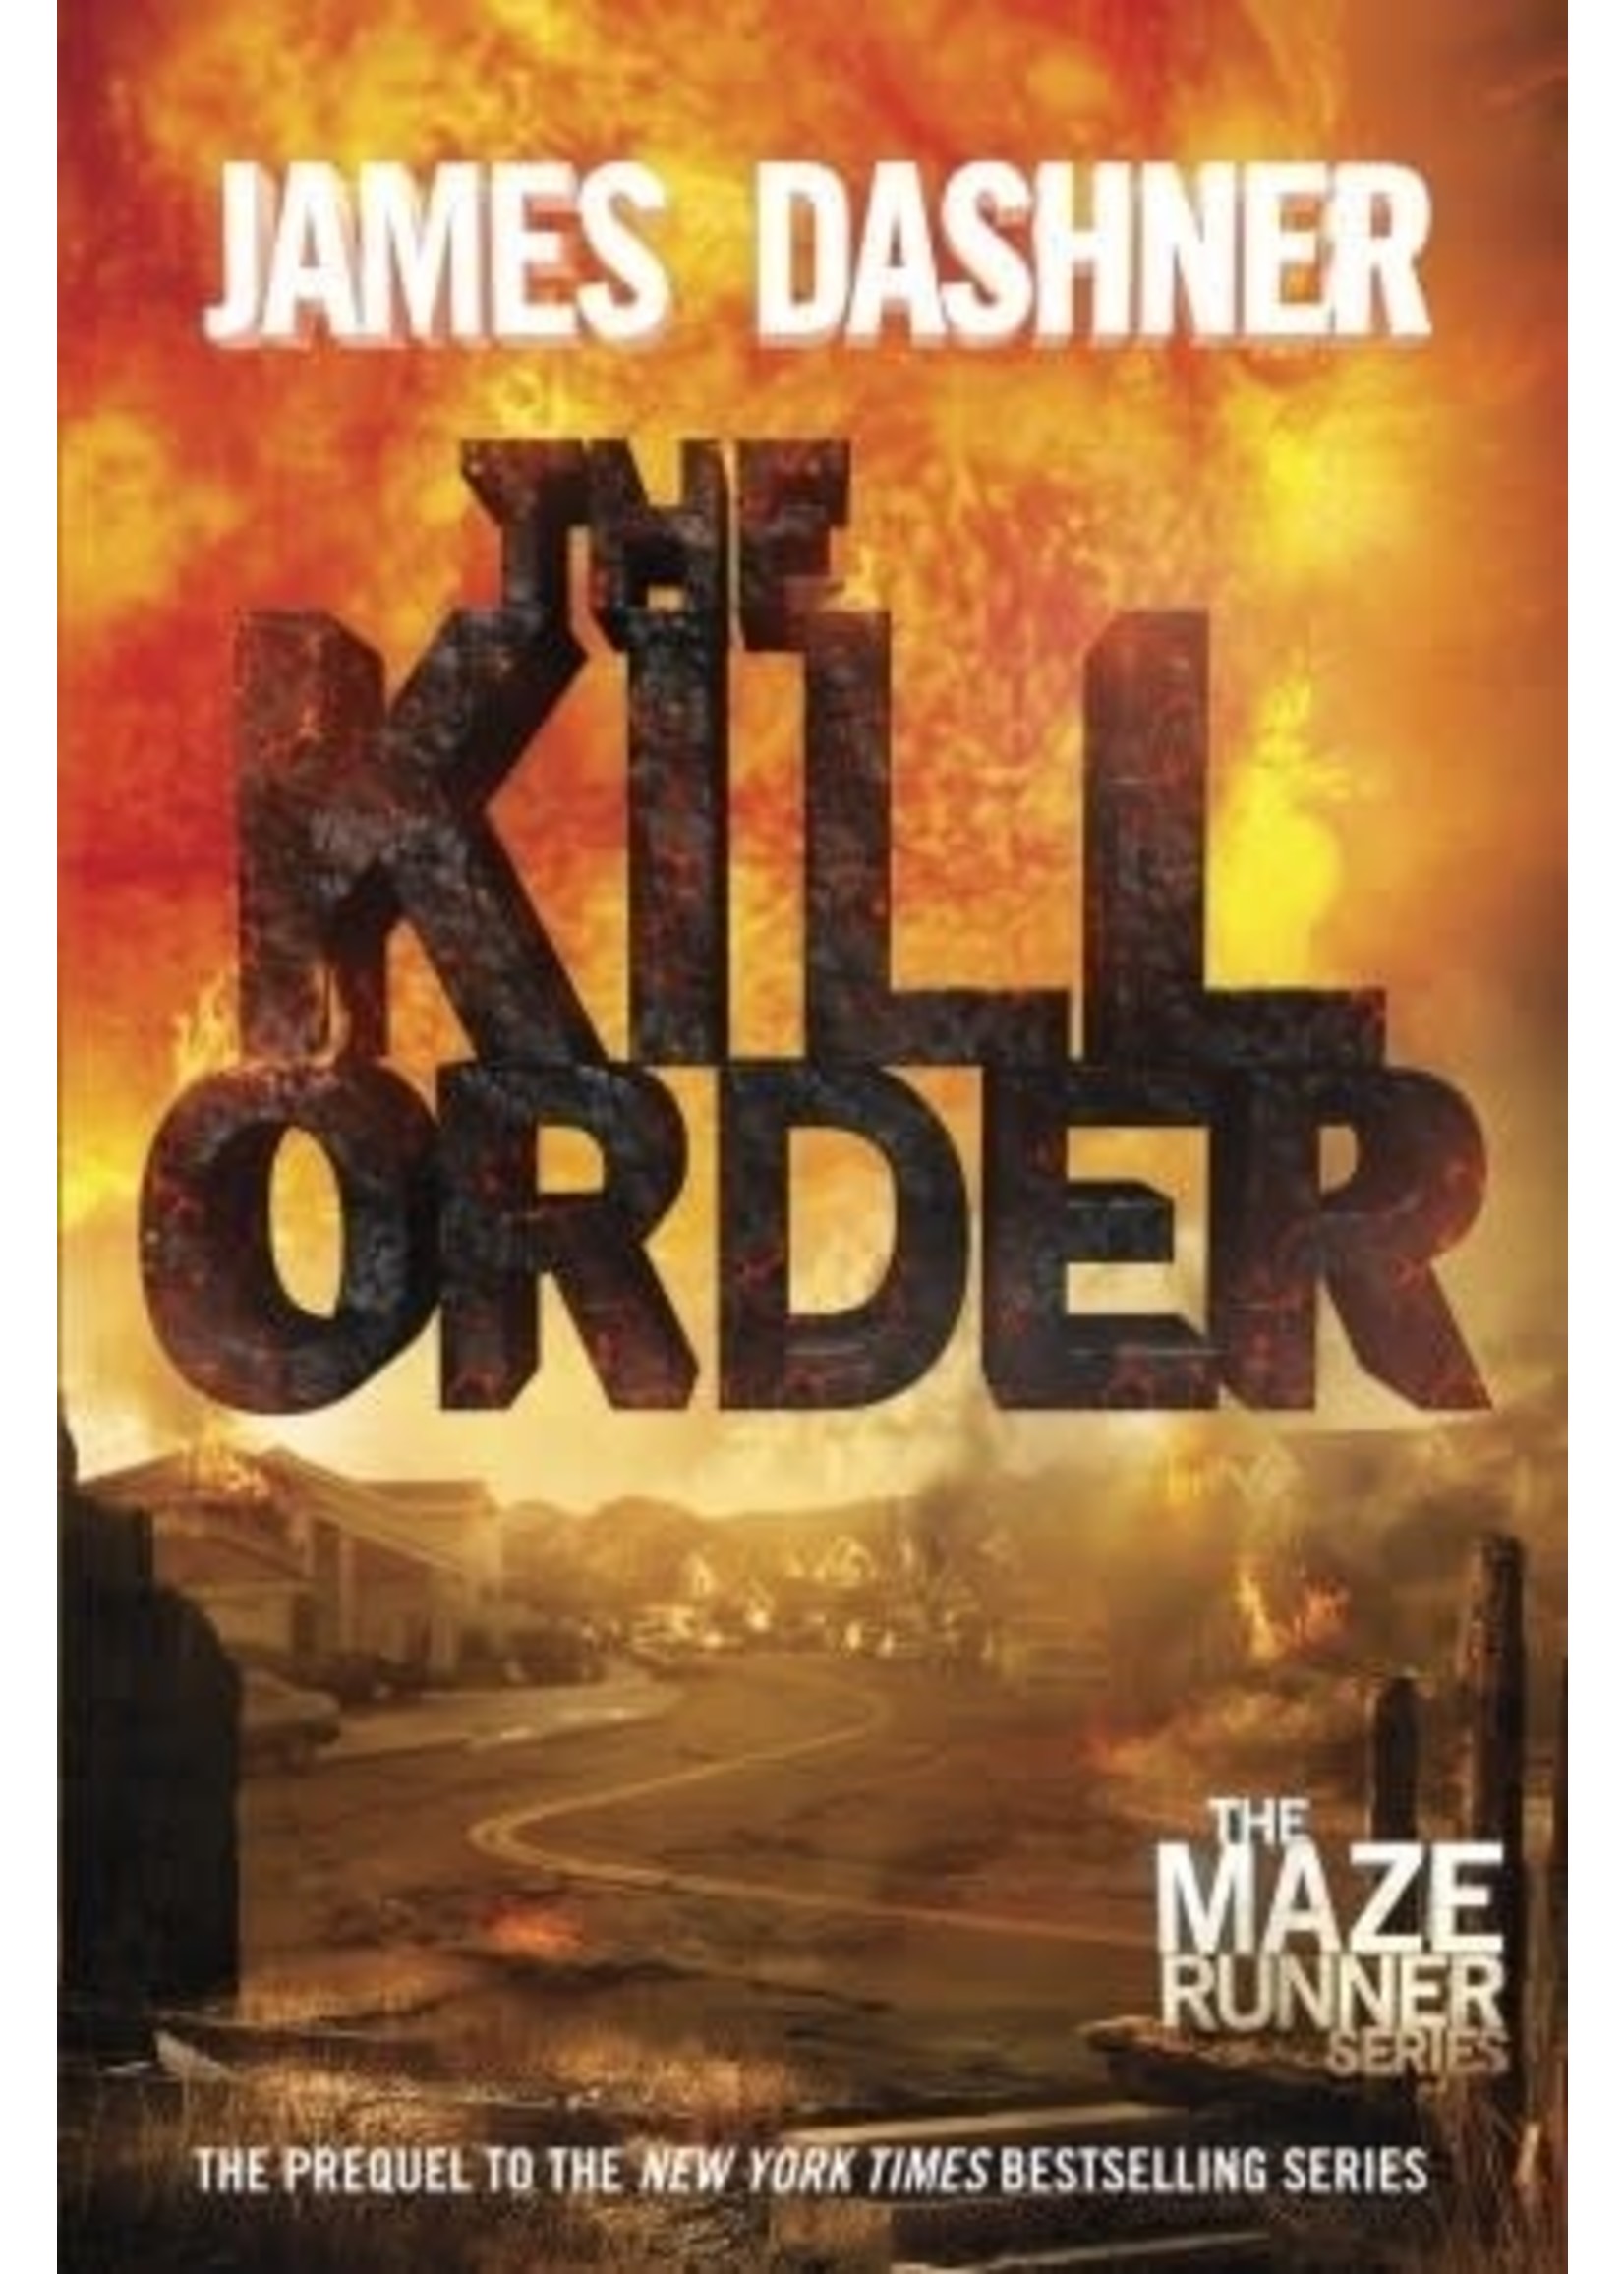 The Kill Order (The Maze Runner #0.4) by James Dashner